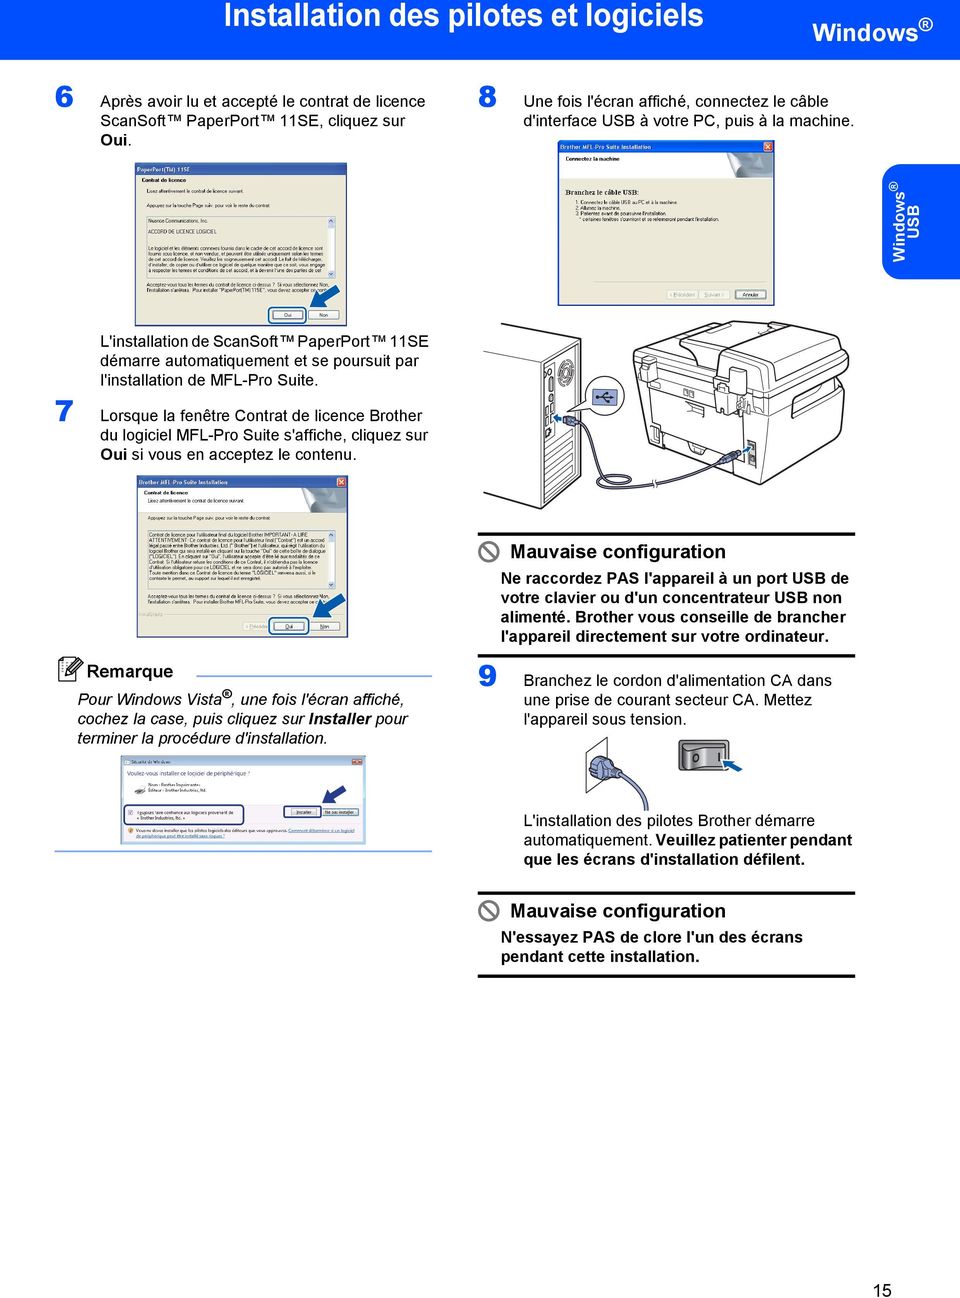 USB L'installation de ScanSoft PaperPort 11SE démarre automatiquement et se poursuit par l'installation de MFL-Pro Suite.